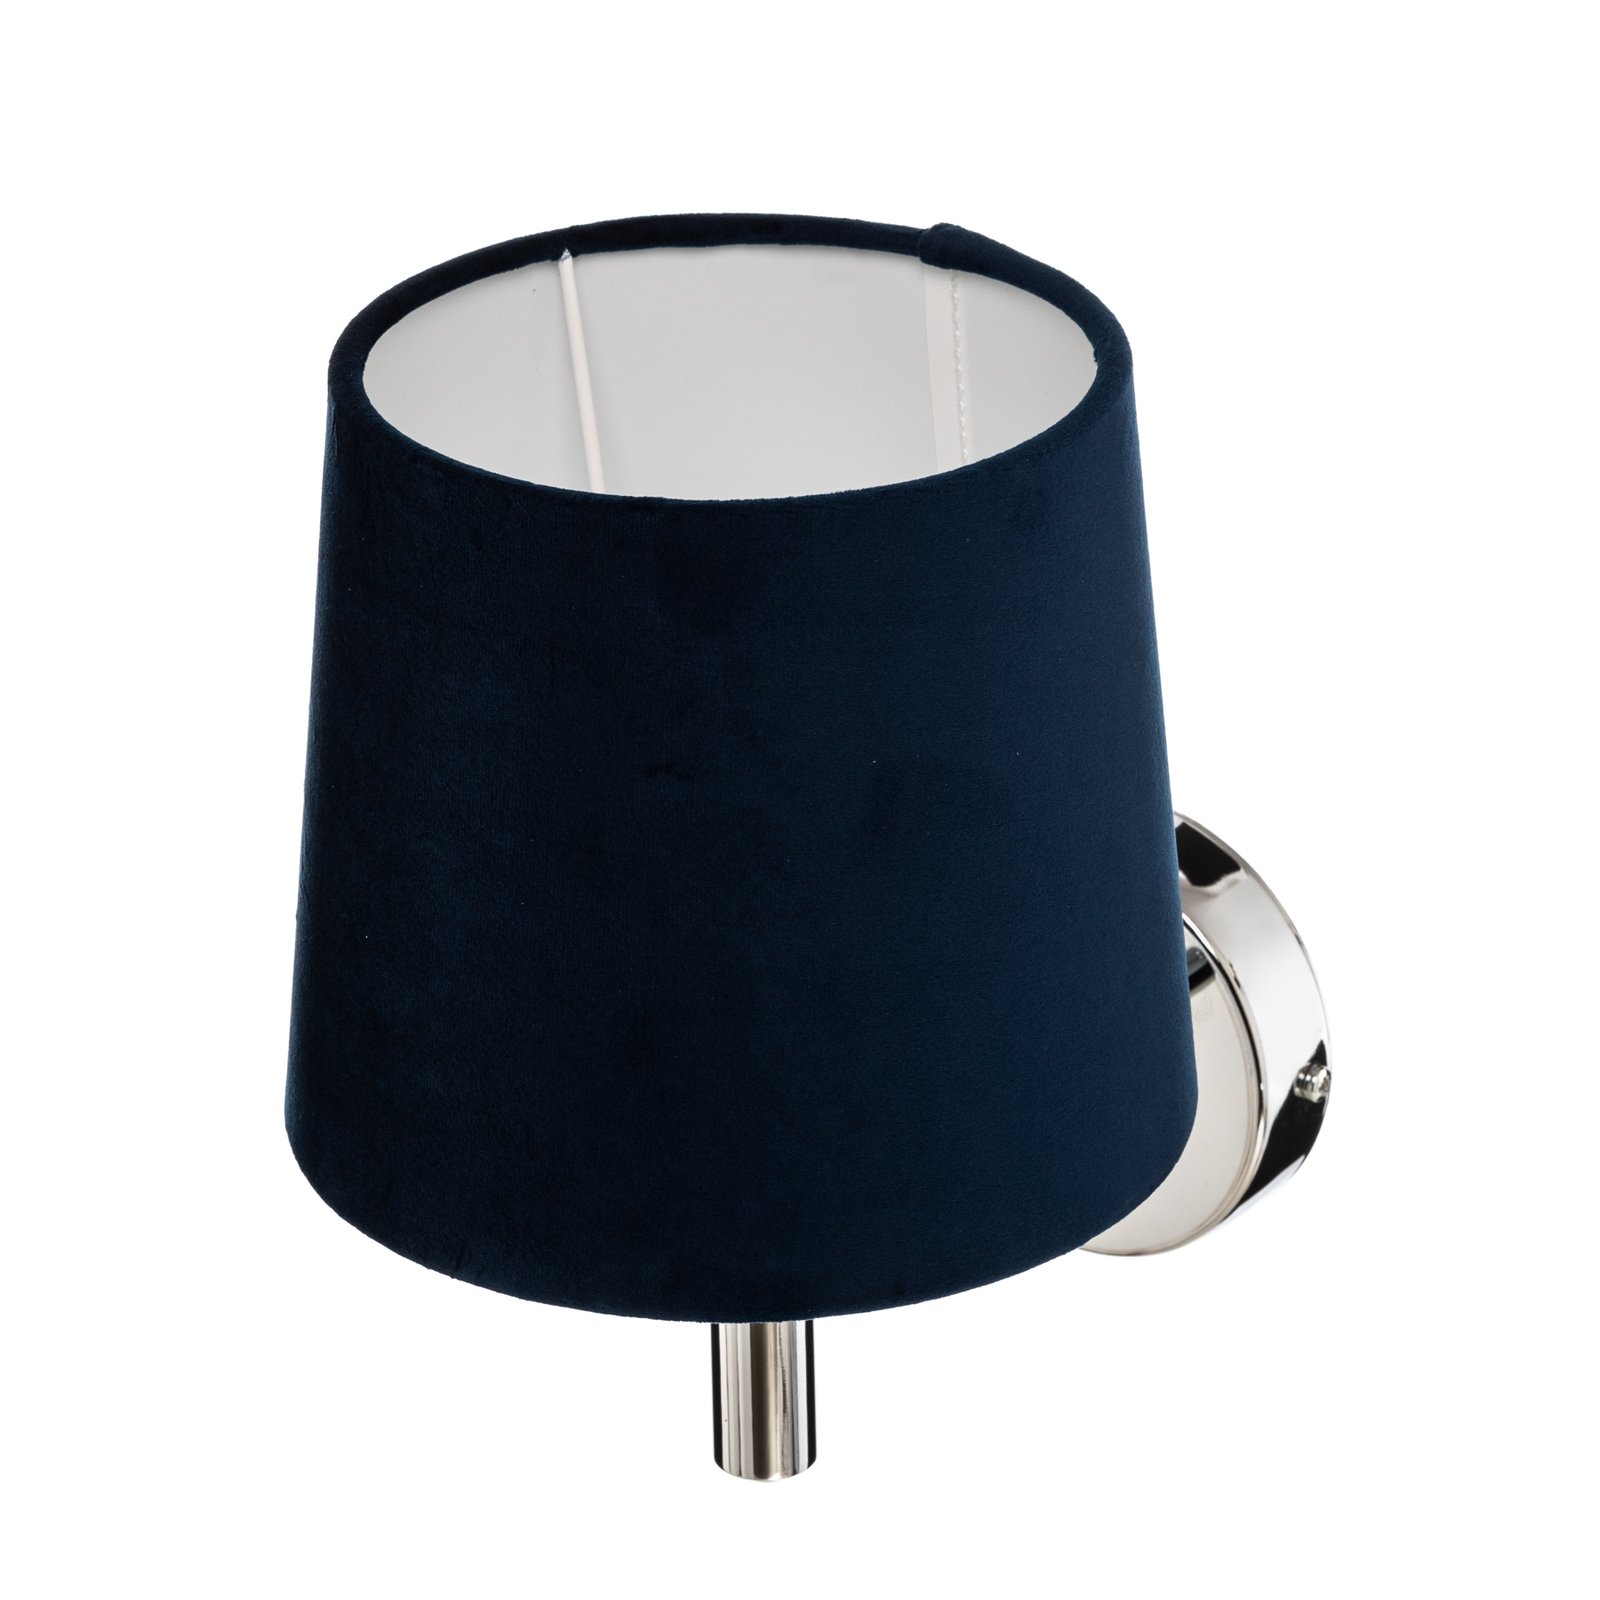 Vegglampe Bono, tekstilskjerm, krom/blå